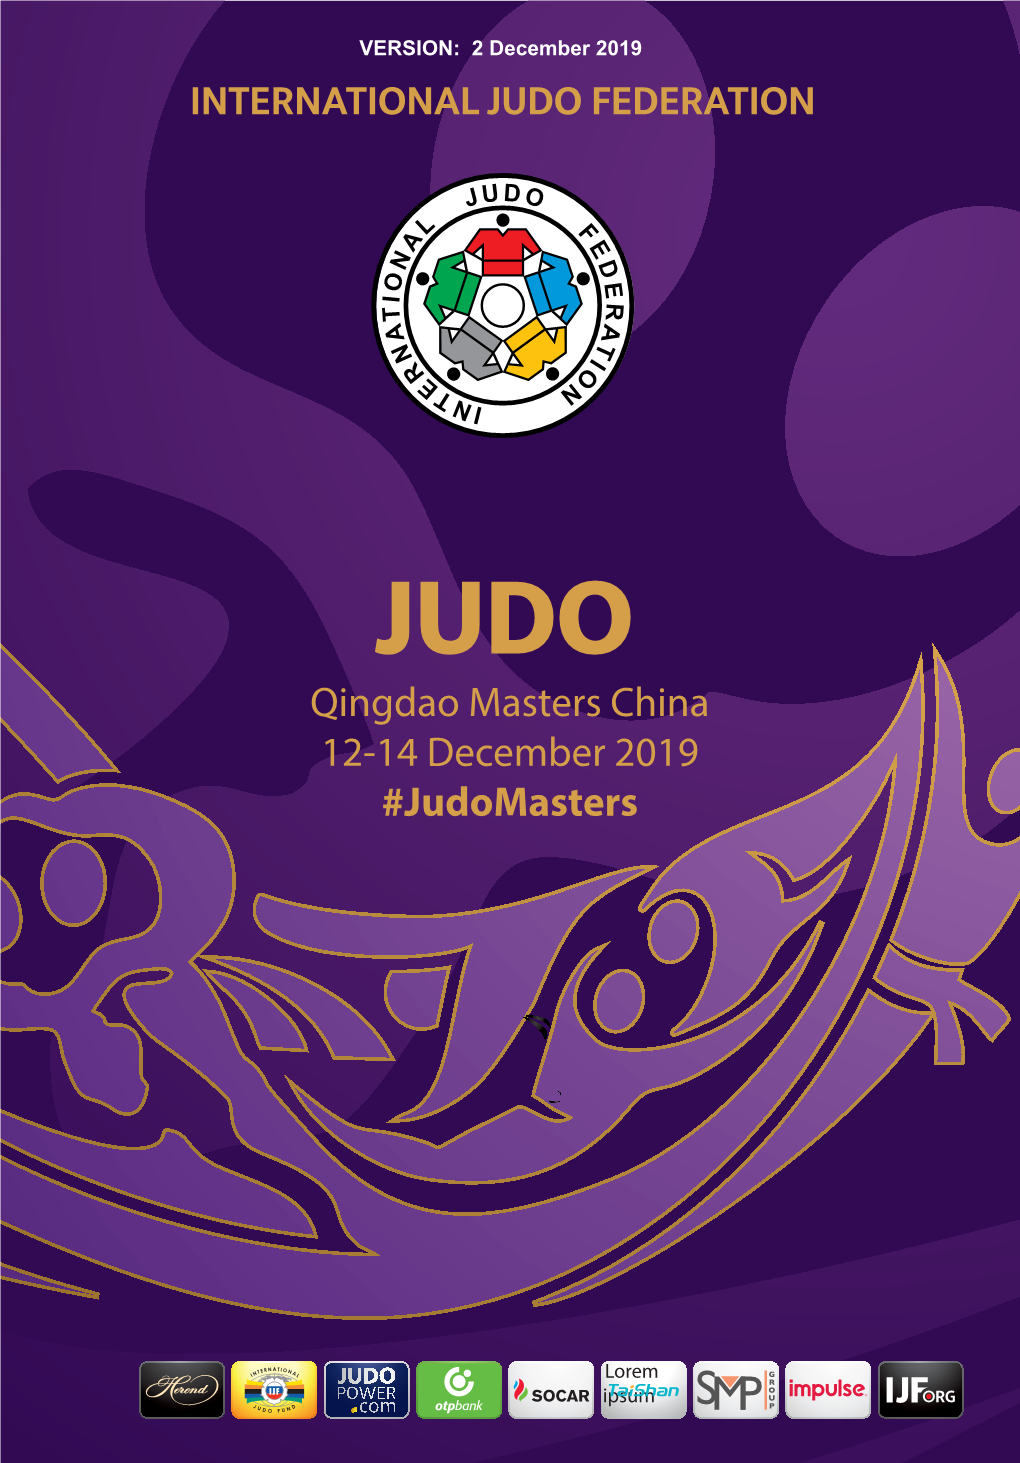 Qingdao Masters China 12-14 December 2019 #Judomasters